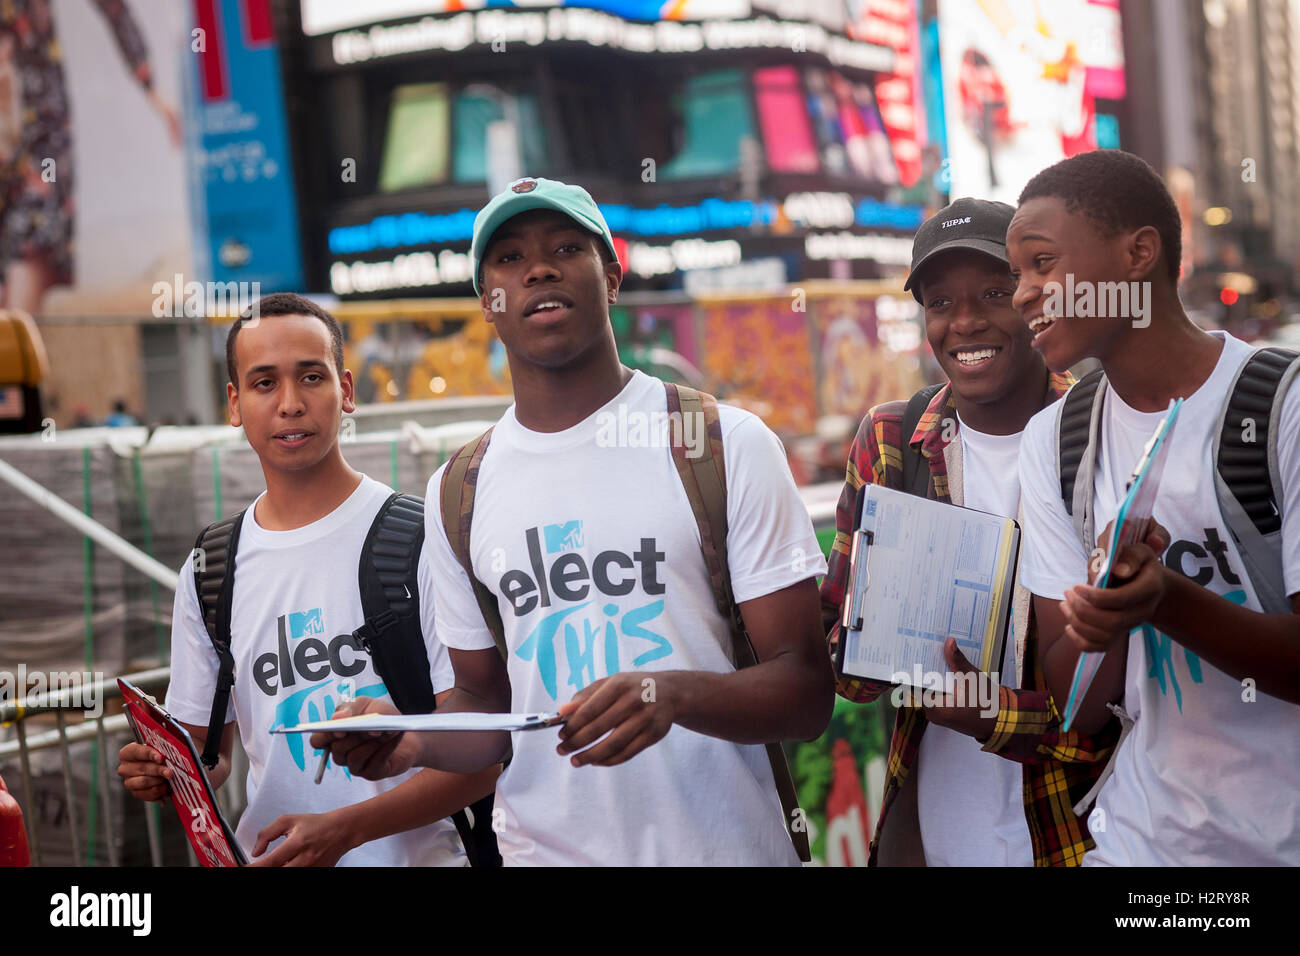 Volontari da presenze Nazionale celebrare la registrazione degli elettori il giorno in Times Square a New York martedì, 27 settembre 2016. I volontari hanno sedotto i non registrati a registrarsi per votare. (© Richard B. Levine) Foto Stock